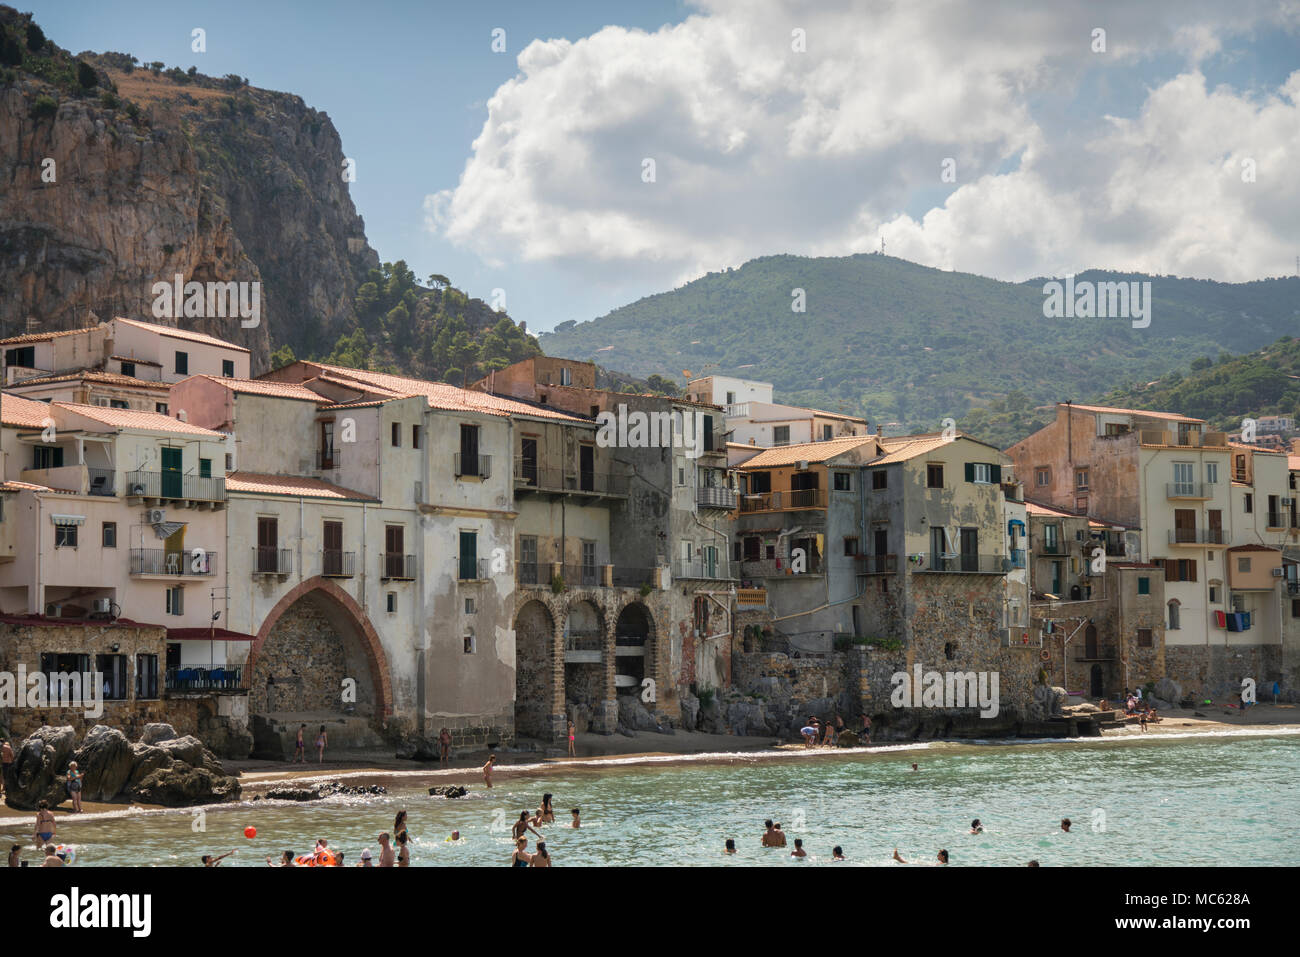 Promontorio roccioso e gli edifici storici che si affaccia sulla spiaggia sabbiosa a Cefalu, Sicilia, Italia, con turisti nuotare nel mare. Foto Stock